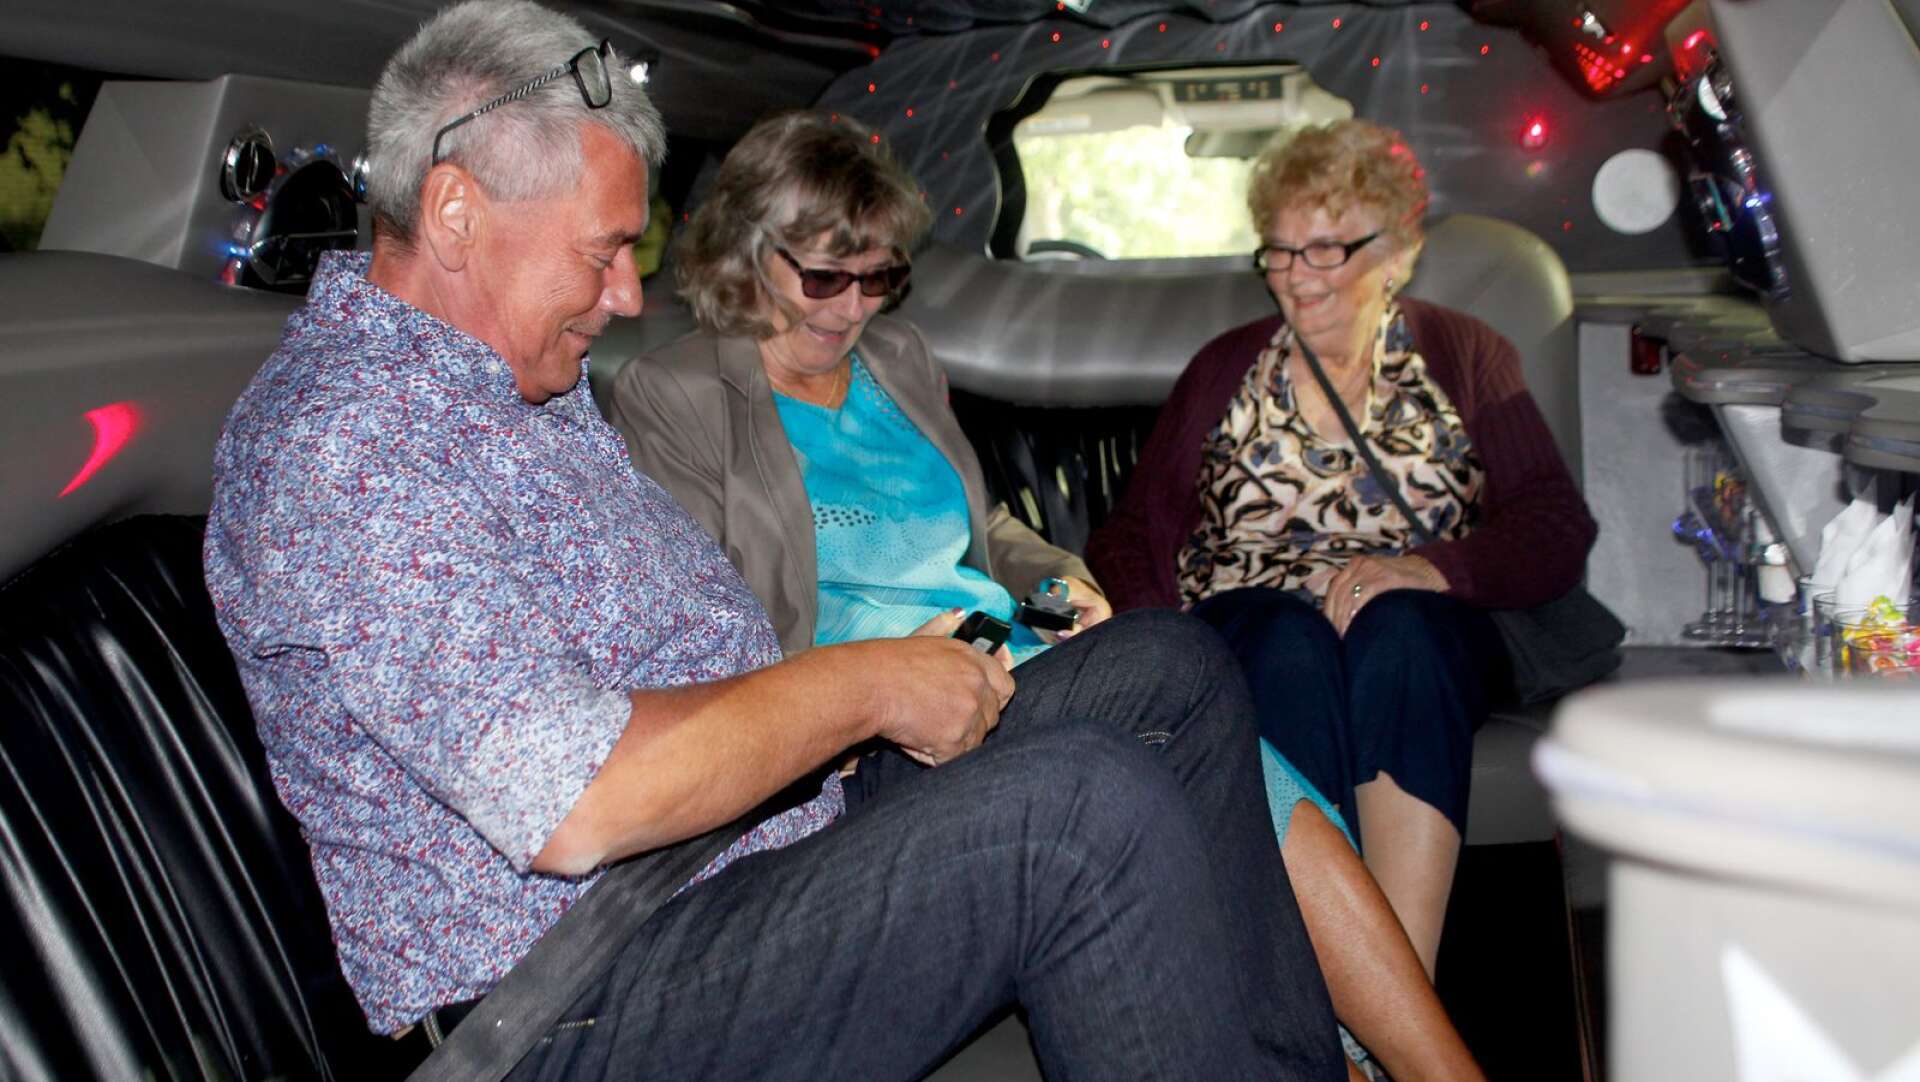 Syskonen firade jämnt och överraskades med en resa i limousine i lördags. Peter Andersson, 60 år, Mona-Lisa Isaksson, 70 år, Margita Kullberg, 80 år.